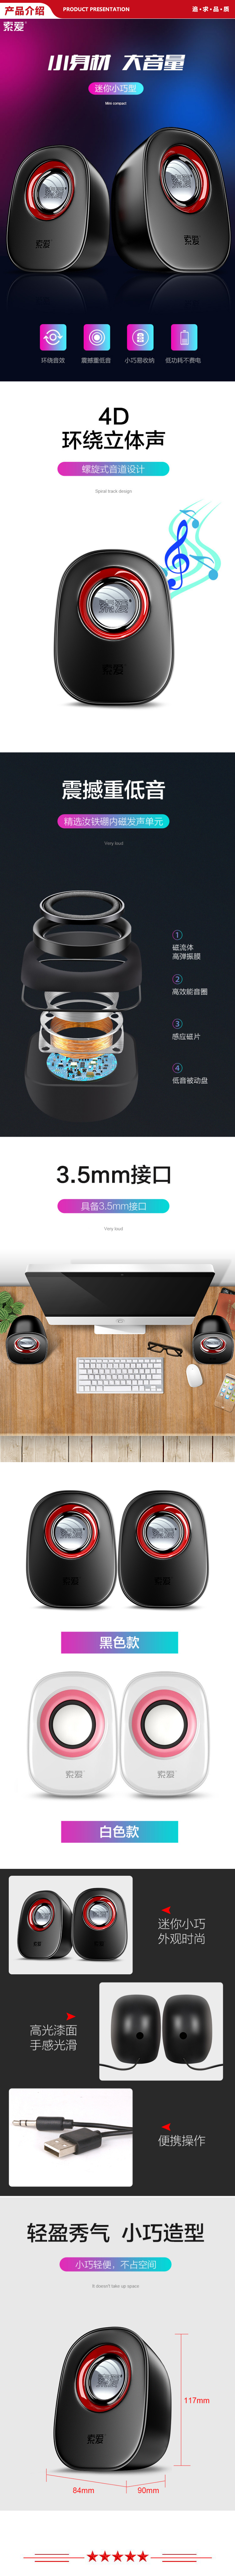 索爱 soaiy SA-L3 迷你小音响音箱 桌面办公家用USB有线低音炮扬声器 白色 .jpg